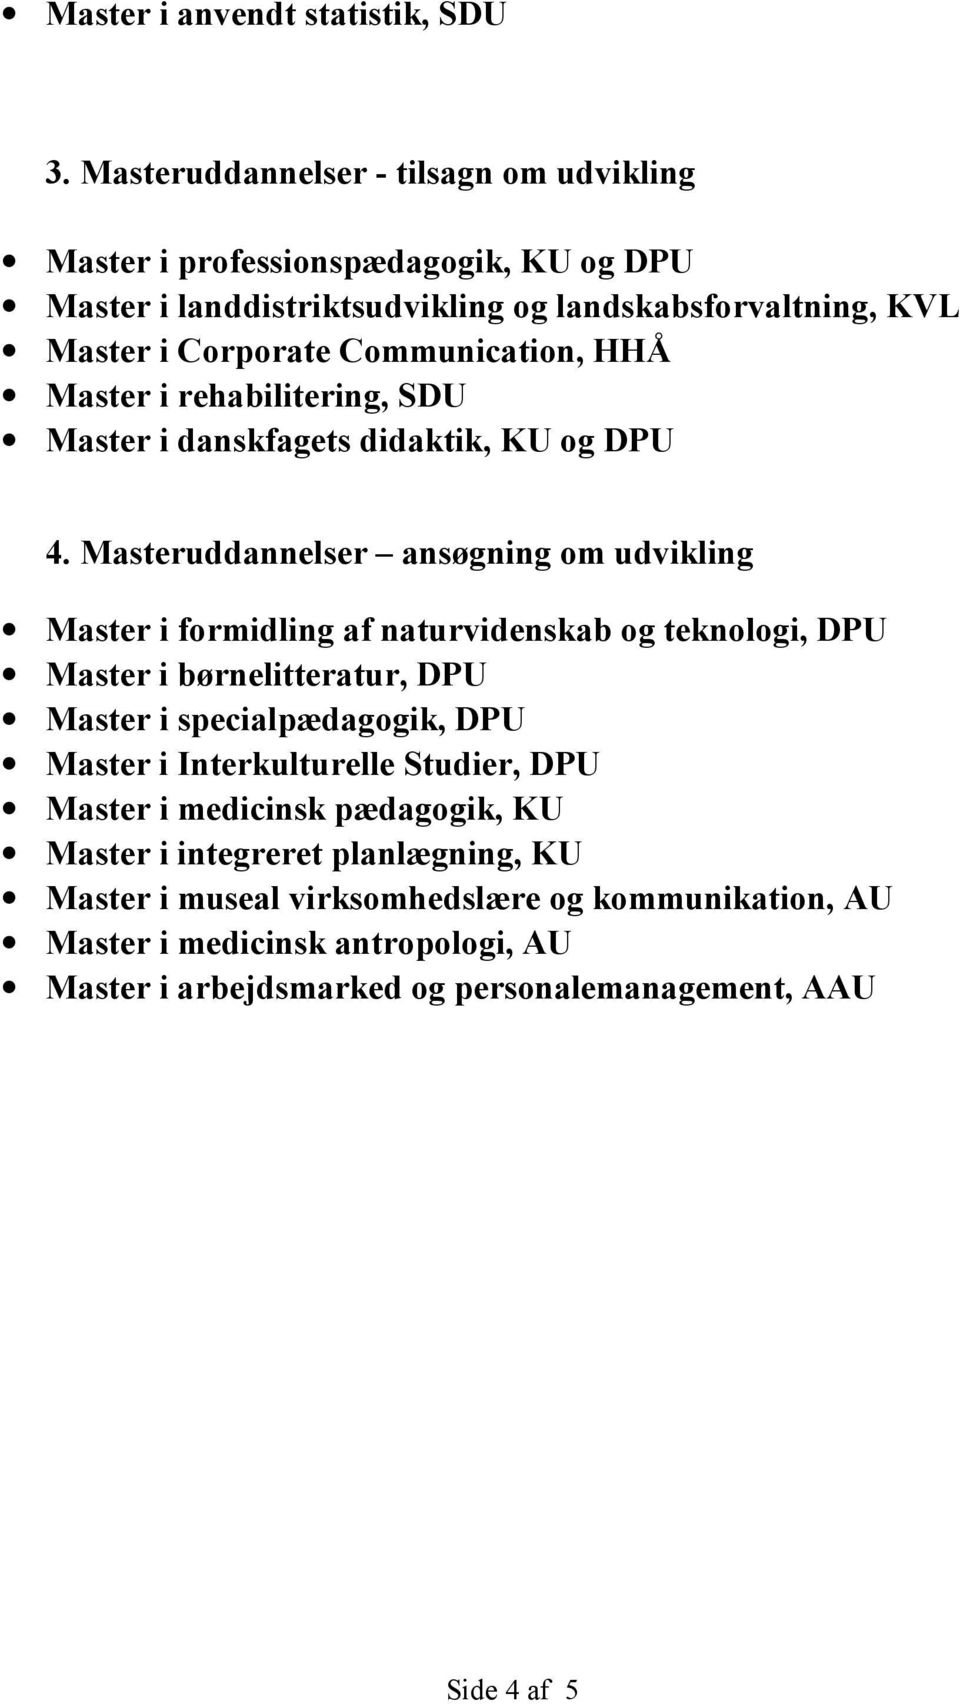 Communication, HHÅ Master i rehabilitering, SDU Master i danskfagets didaktik, KU og DPU 4.